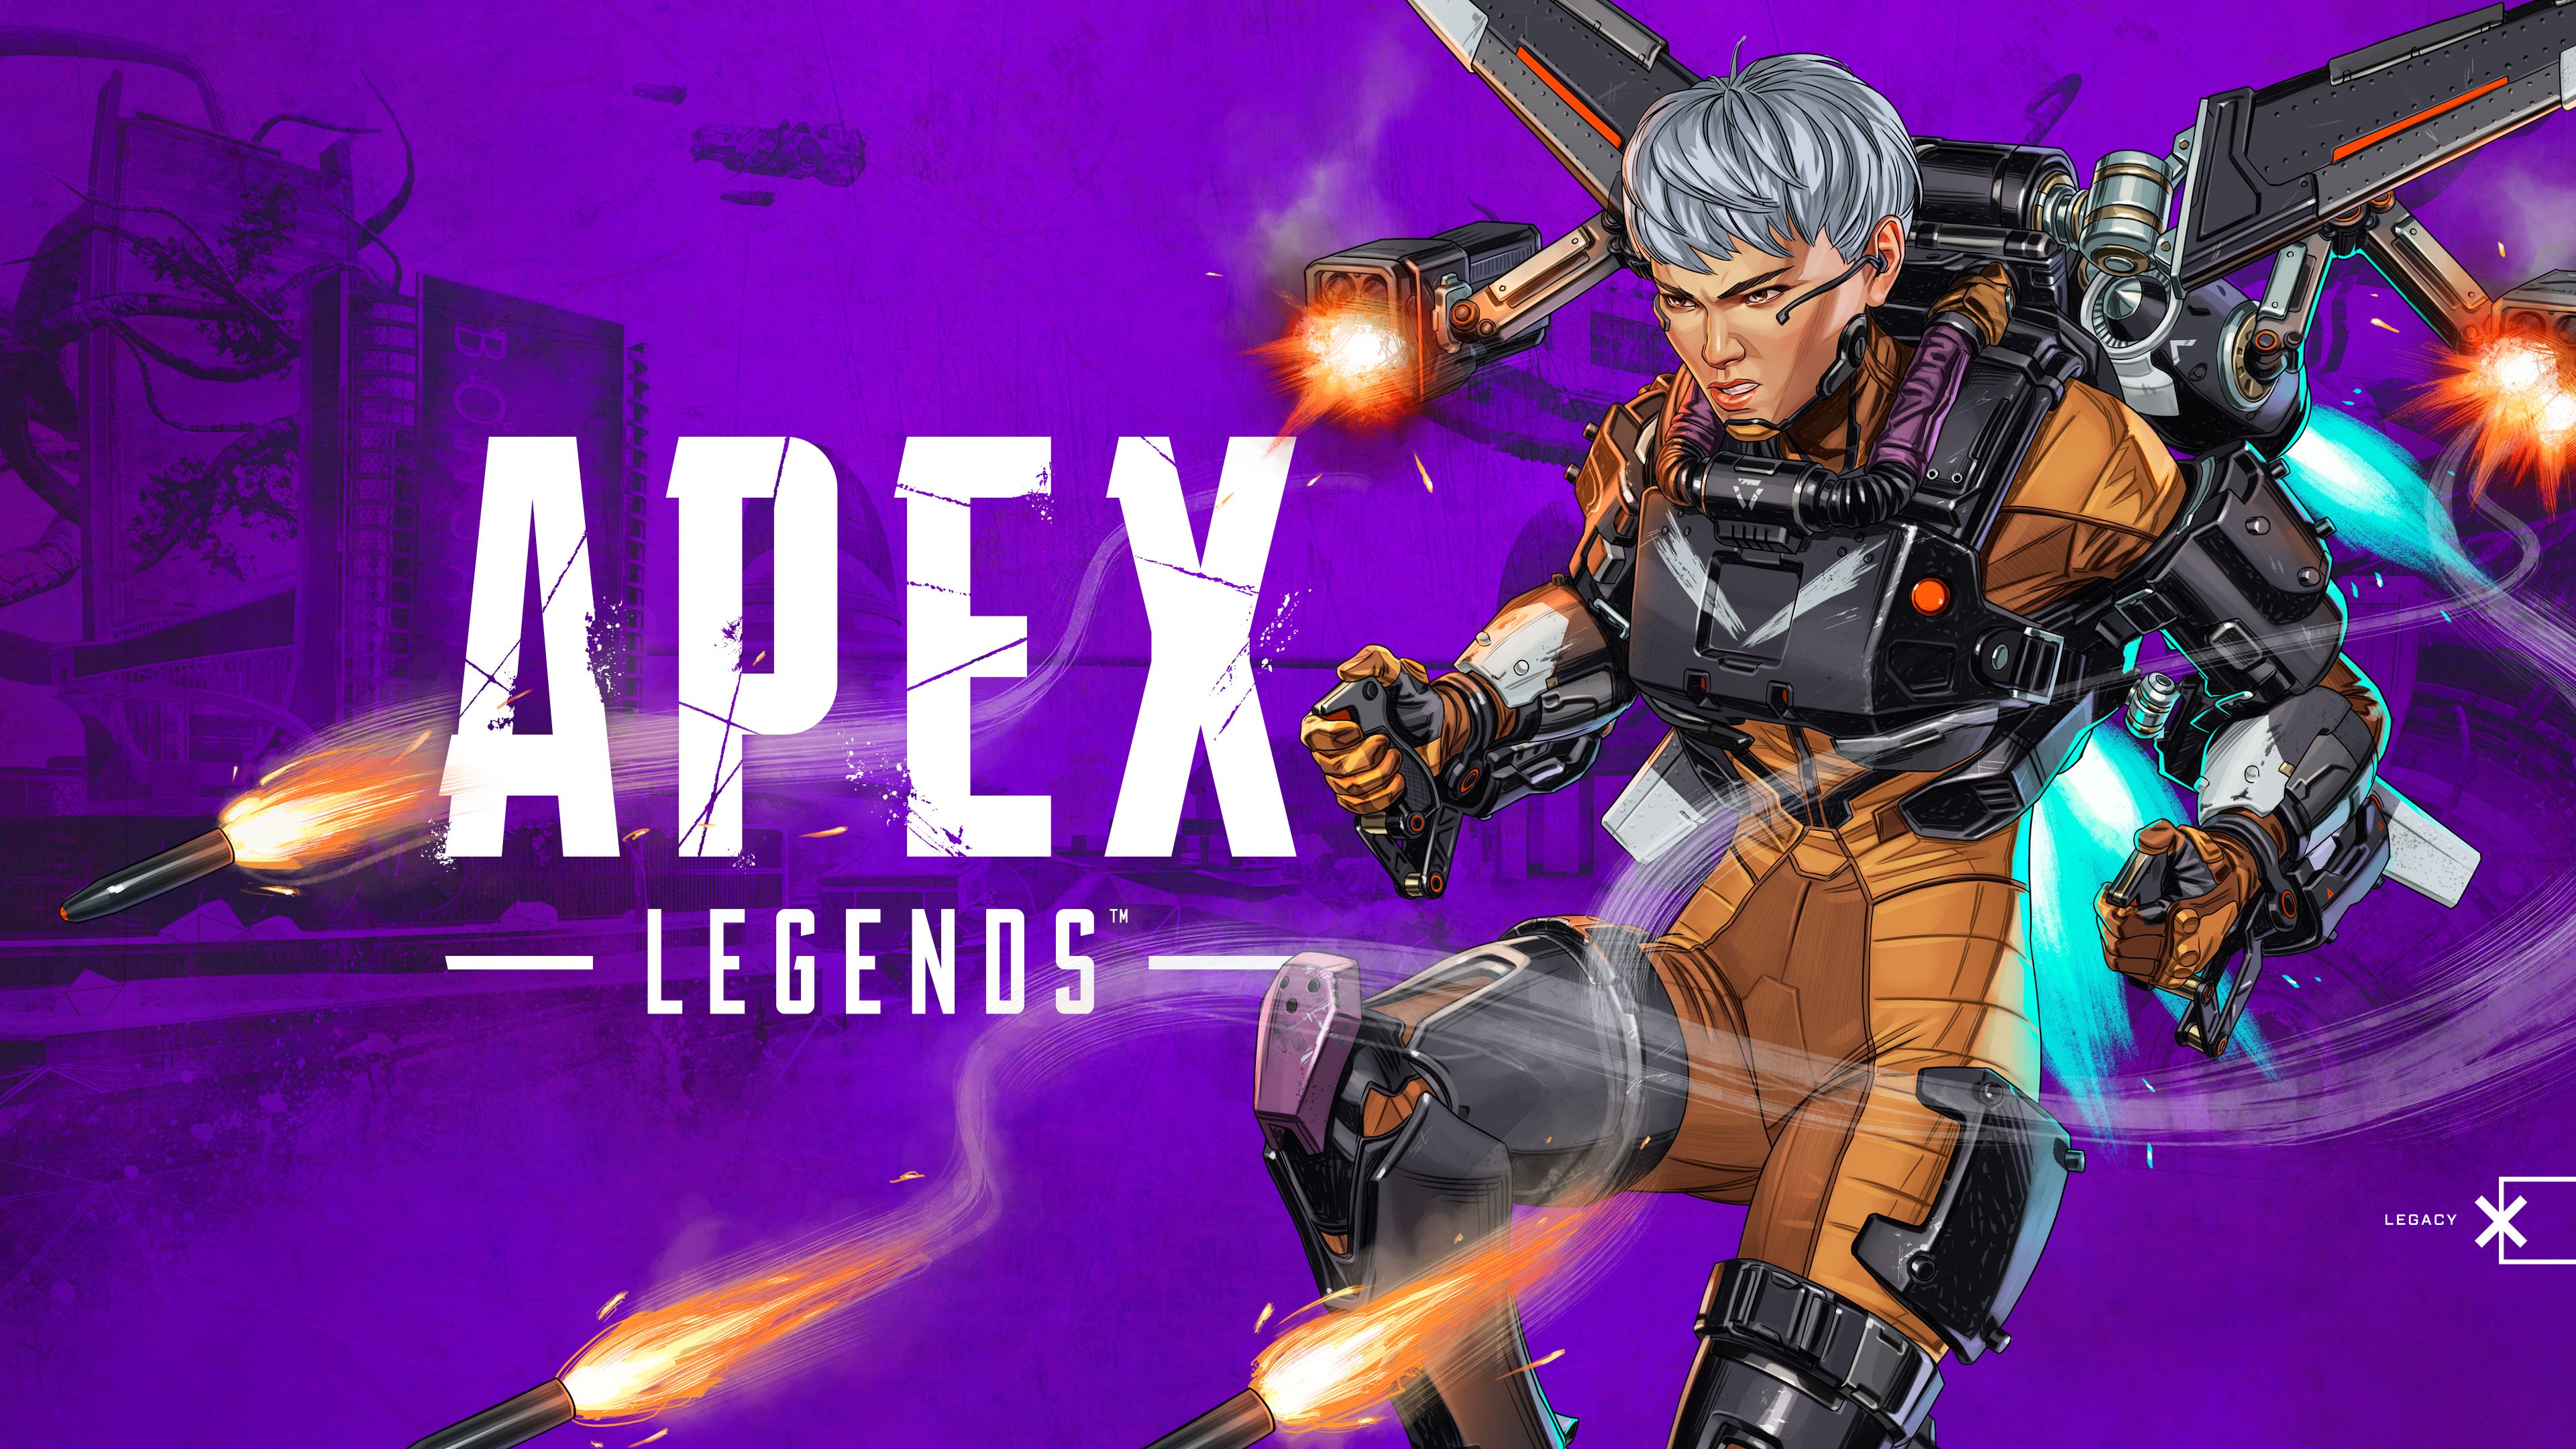 Apex legacy 01 5